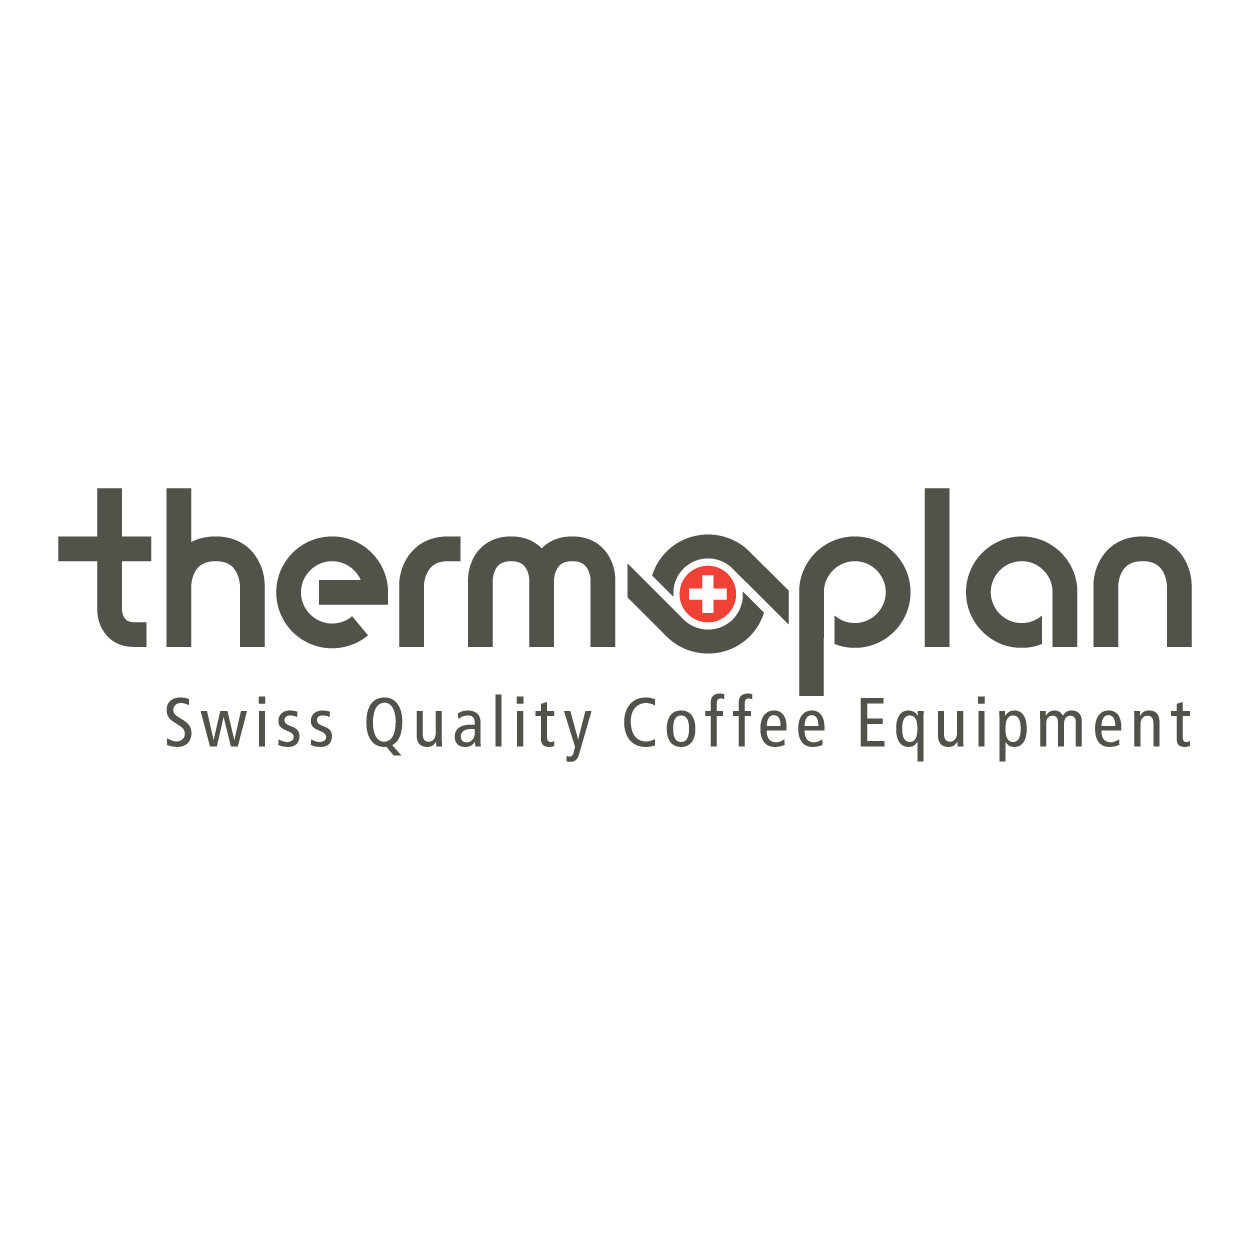 Thermoplan